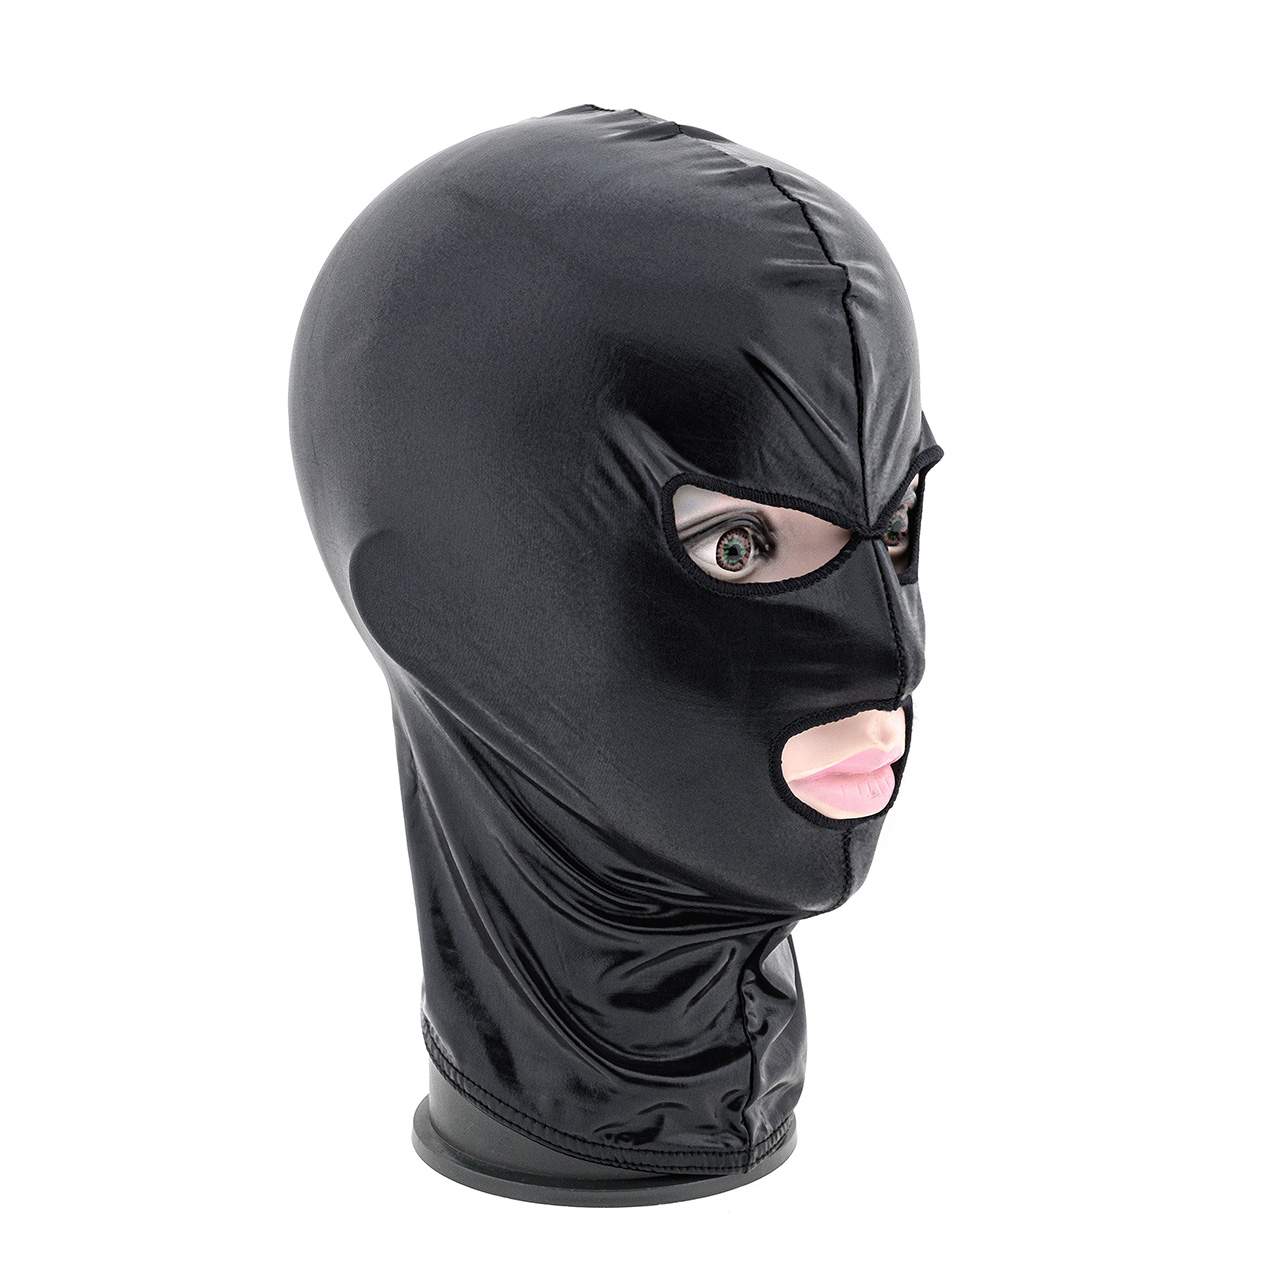 Czarna błyszcząca maska BDSM z otworami na oczy i usta